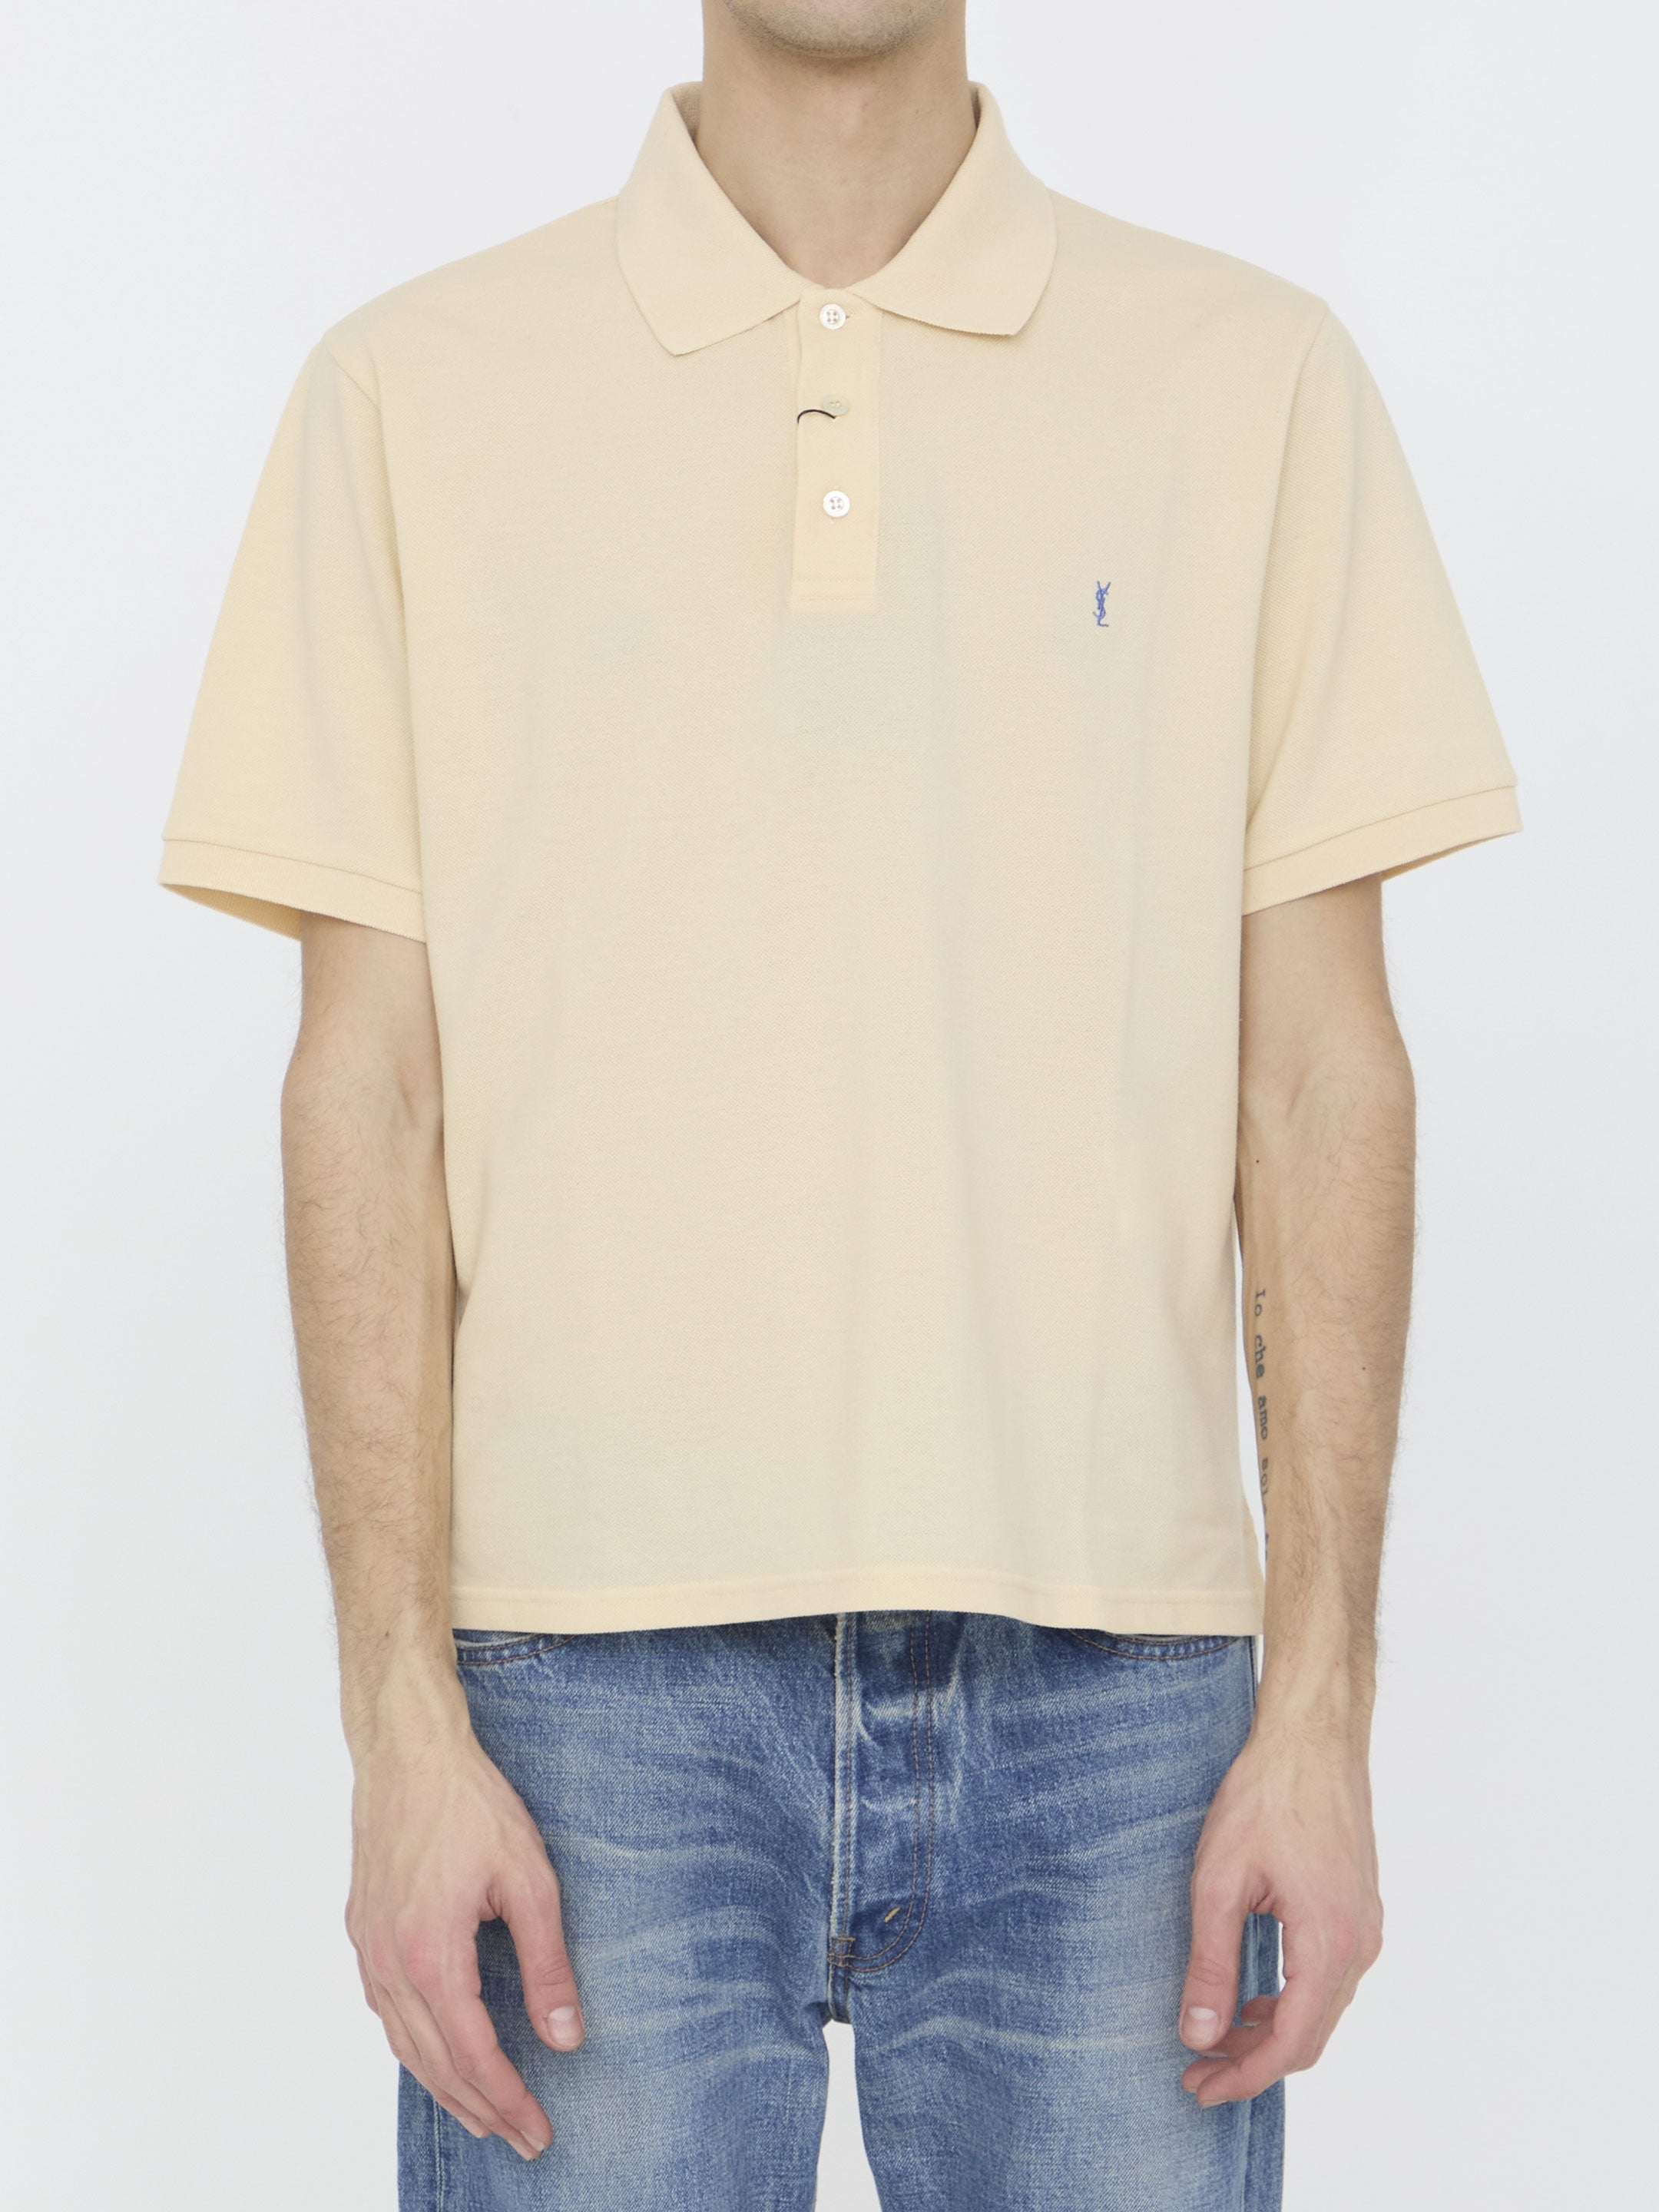 SAINT-LAURENT-OUTLET-SALE-Cassandre-polo-shirt-Shirts-L-BEIGE-ARCHIVE-COLLECTION.jpg